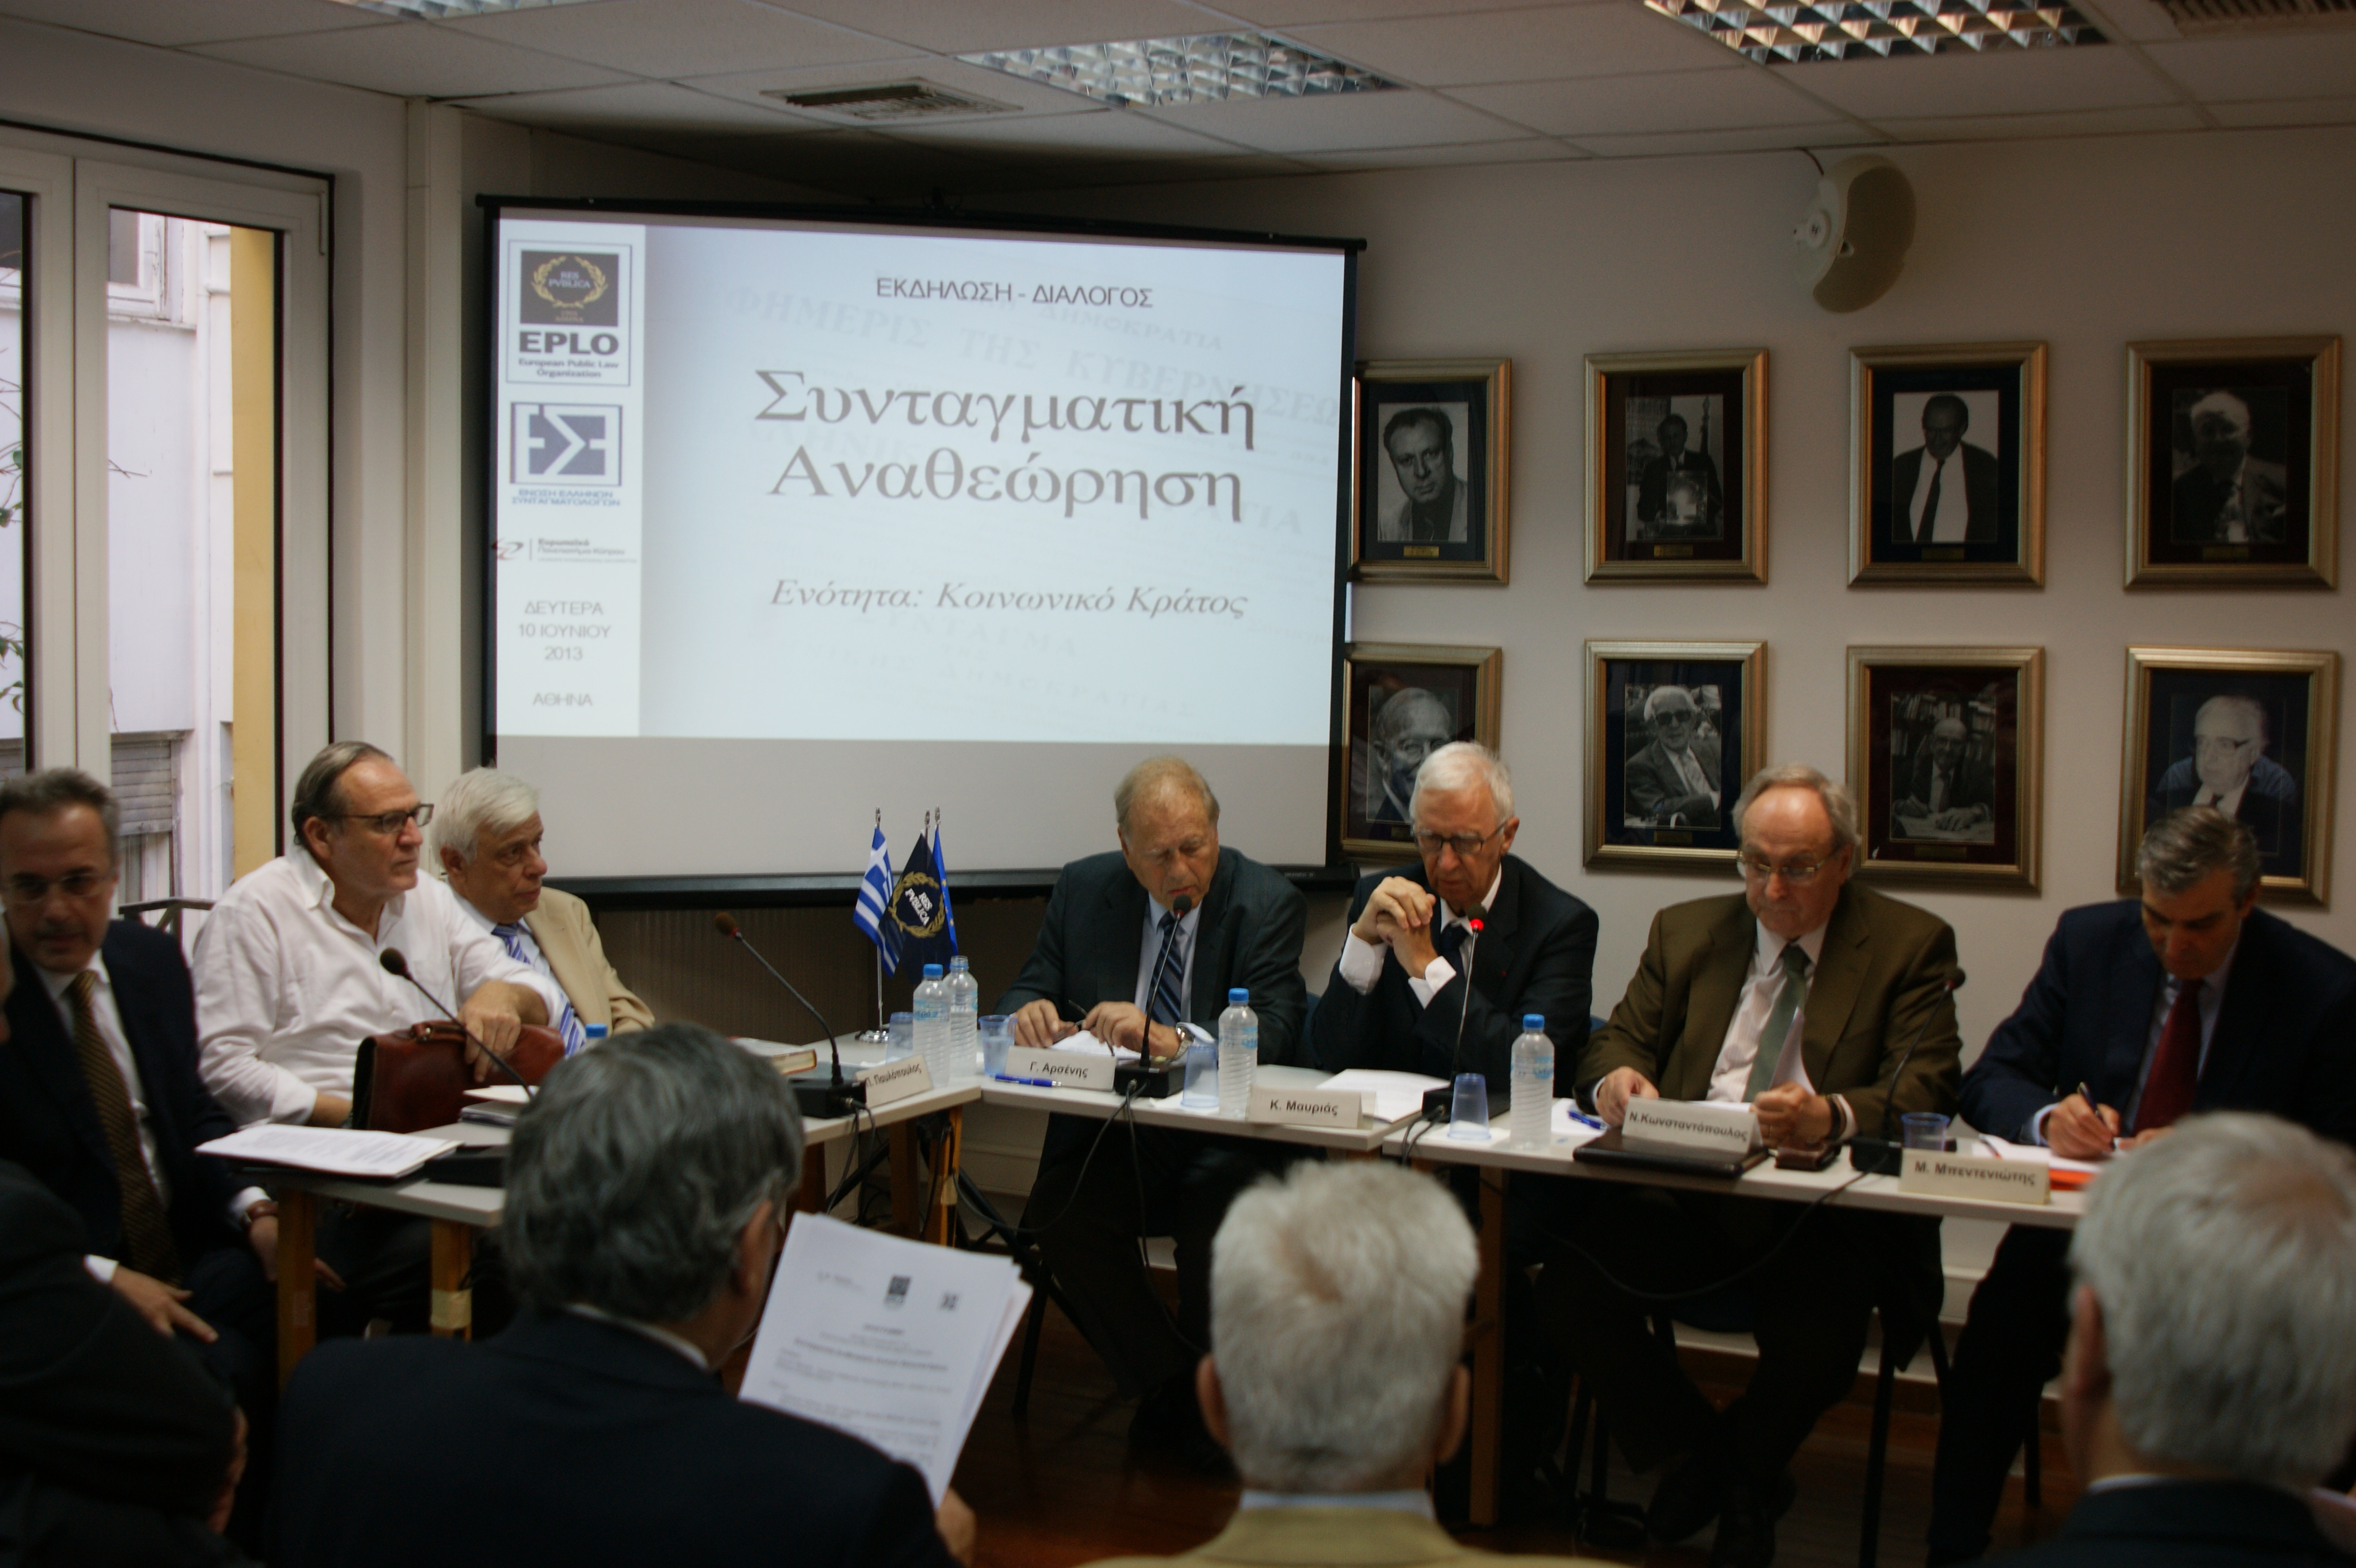 Εκδήλωση από τον EPLO με θέμα:  «Συνταγματική Αναθεώρηση:  Ενότητα: Κοινωνικό Κράτος (10/6/2013)